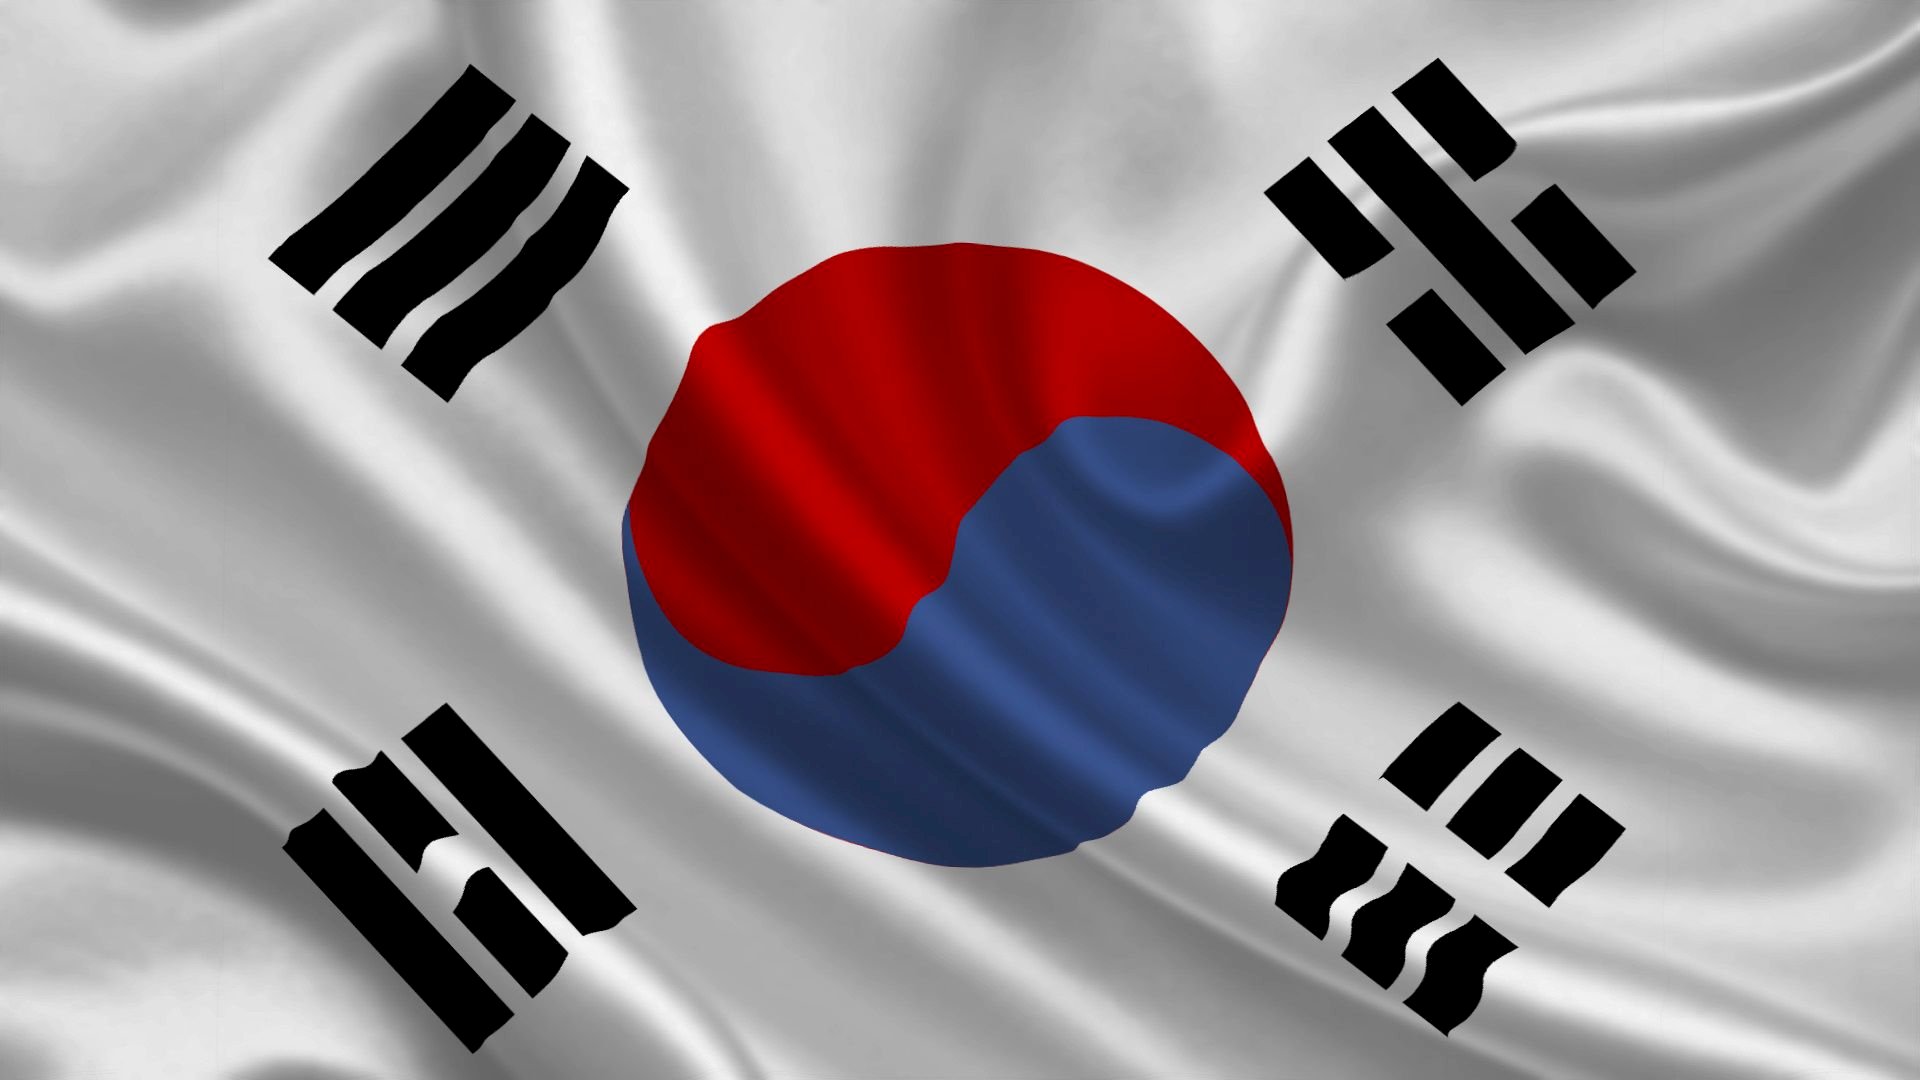 Lá cờ: Lá cờ là biểu tượng đại diện cho một quốc gia, mang trong mình sức mạnh tinh thần, tinh thần đoàn kết, tình yêu và lòng tự hào của dân tộc. Với thiết kế độc đáo và sắc màu tươi sáng, lá cờ Hàn Quốc là một trong những lá cờ ấn tượng nhất thế giới.